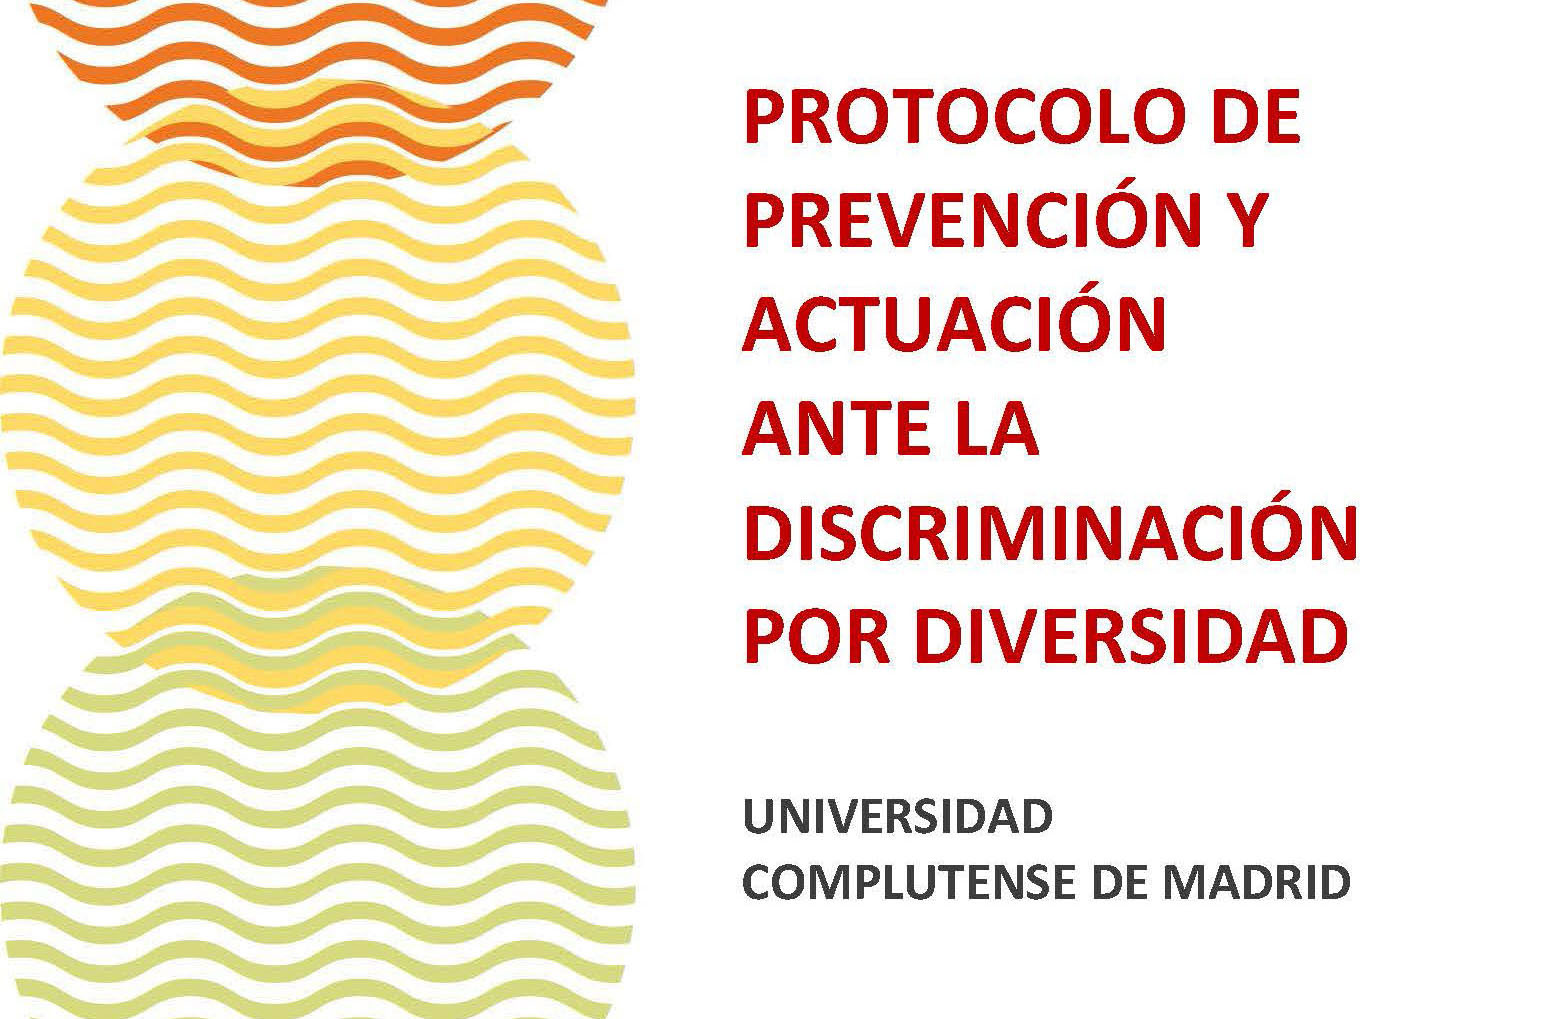 Protocolo de prevención y actuación ante la discriminación por diversidad.